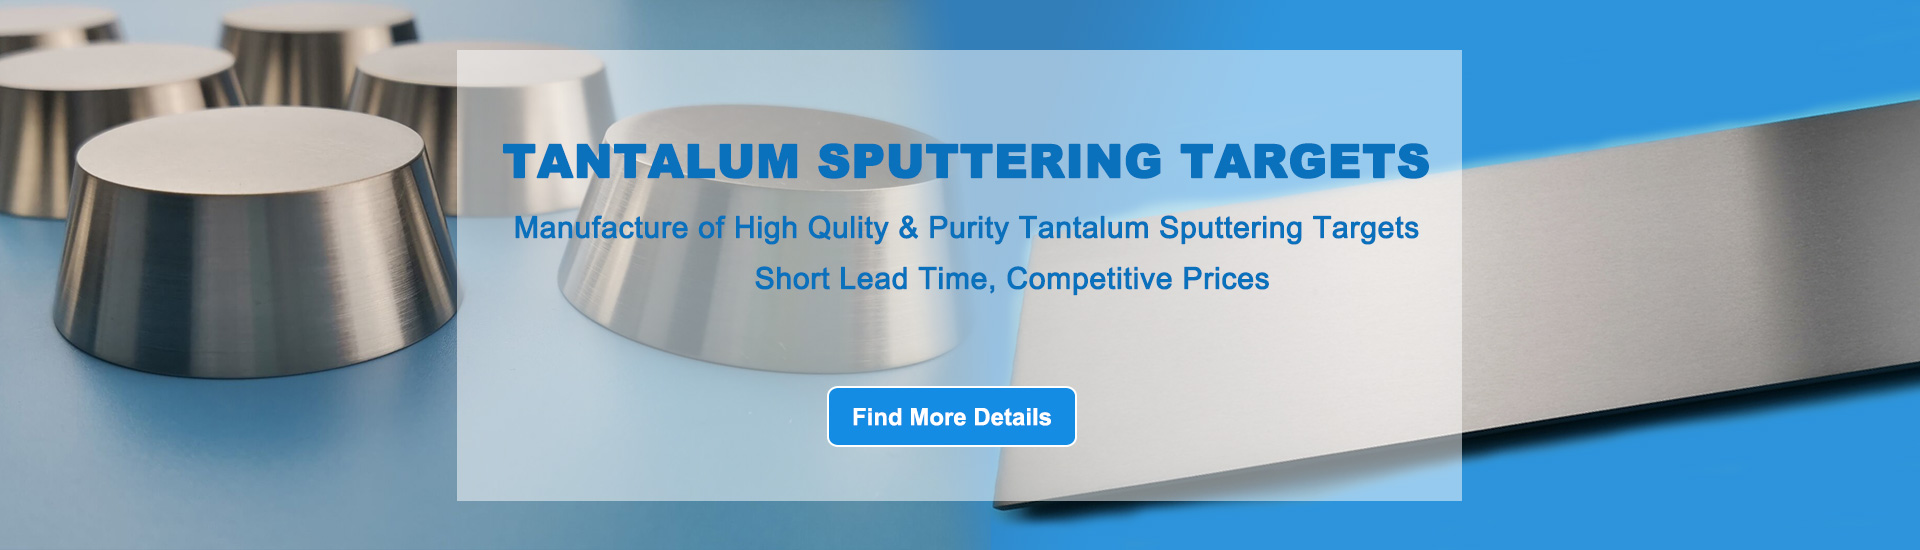 Tantalum Sputtering Targets